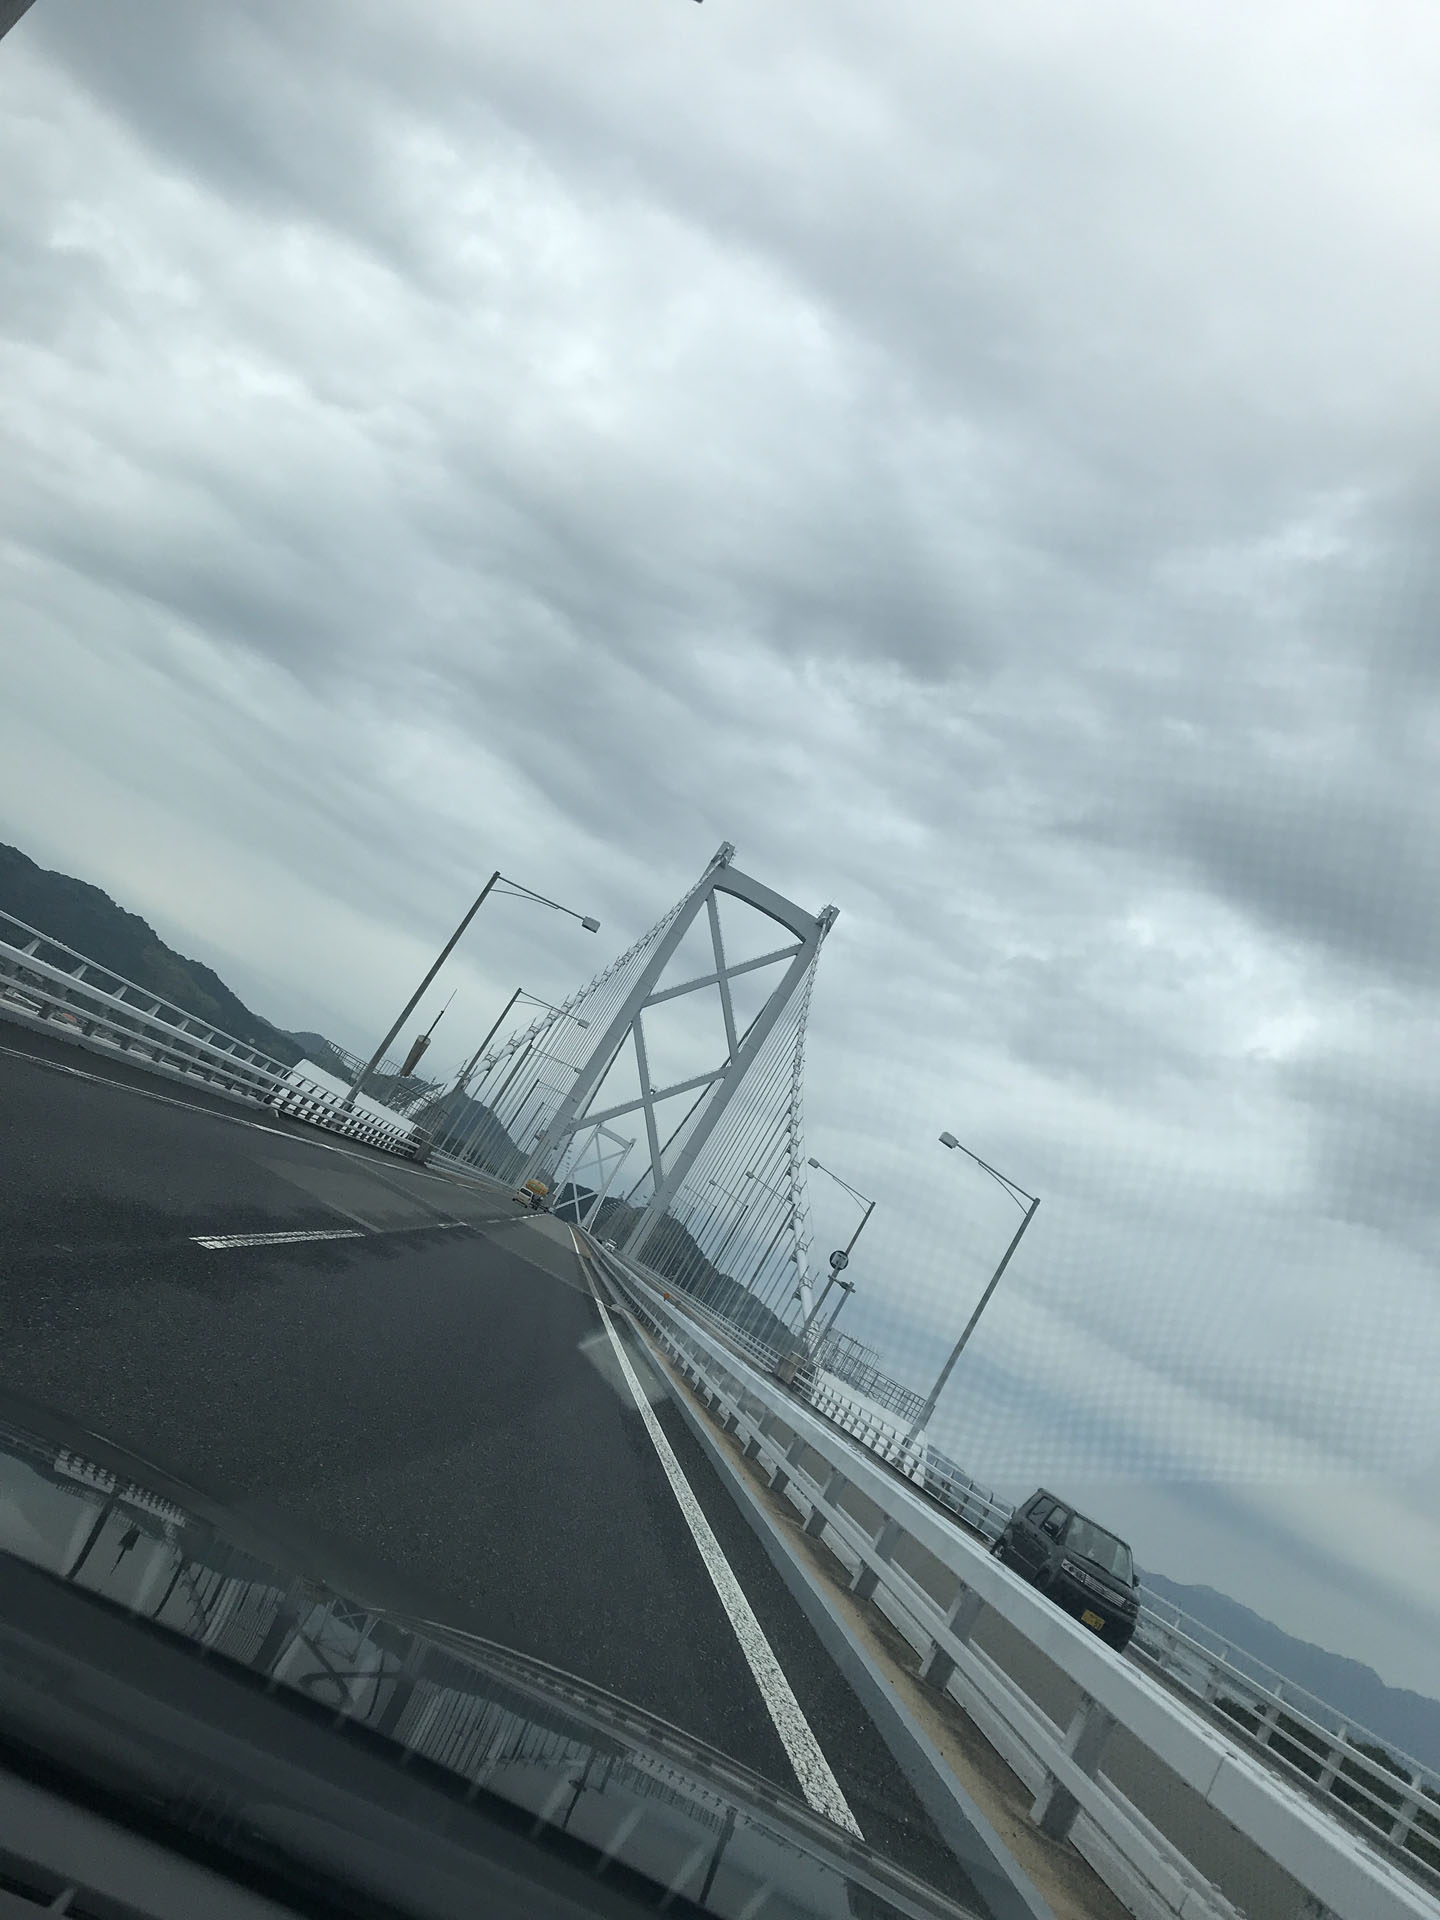 しまなみ海道を通り愛媛県大三島へ。
たまに強い雨が降ったりして、不安を煽られます。